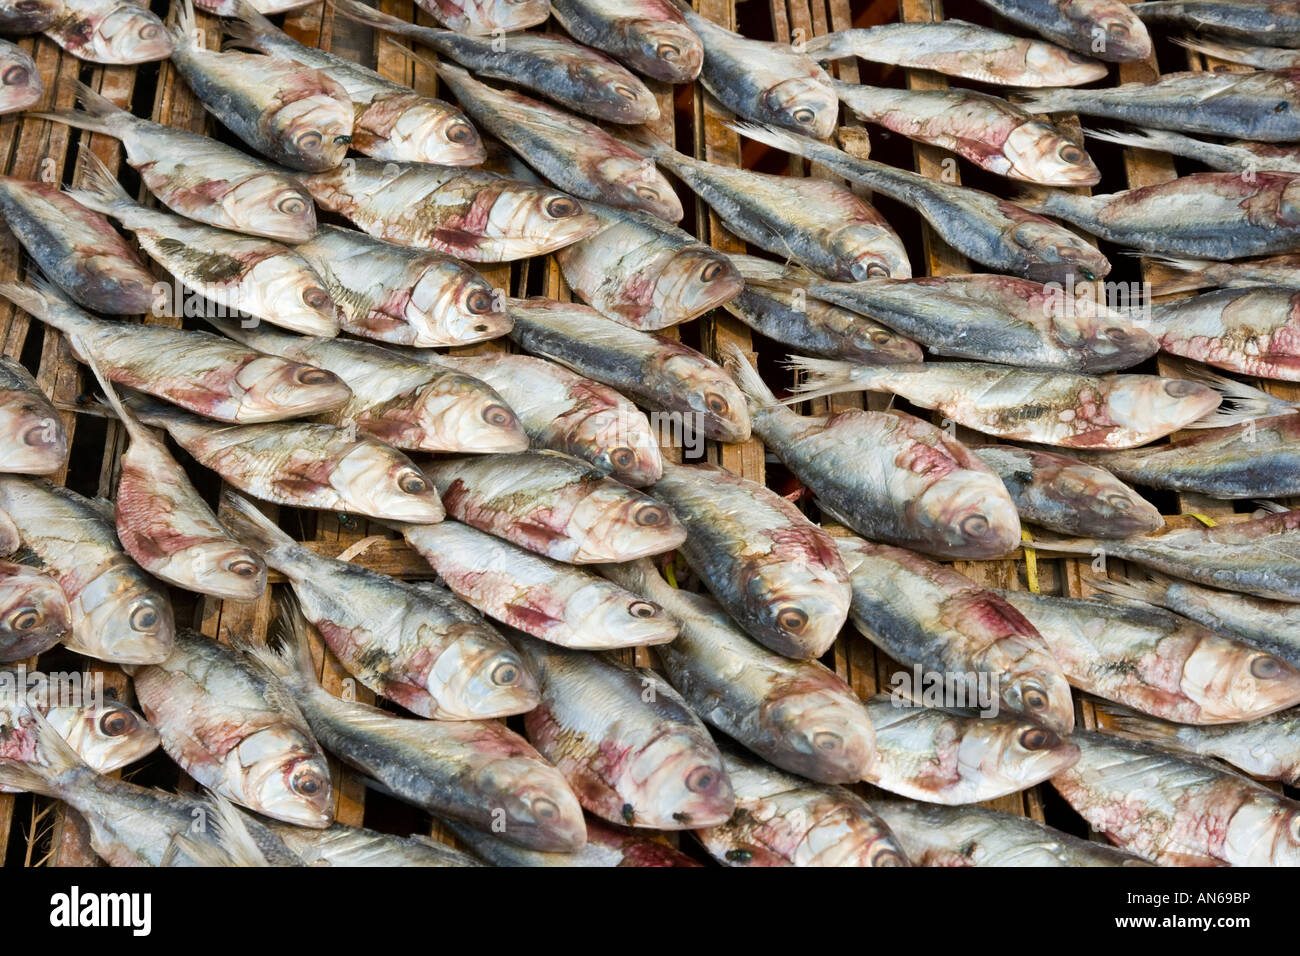 Le poisson séché Pasar Ikan Marché de poisson de Jakarta, Indonésie Banque D'Images